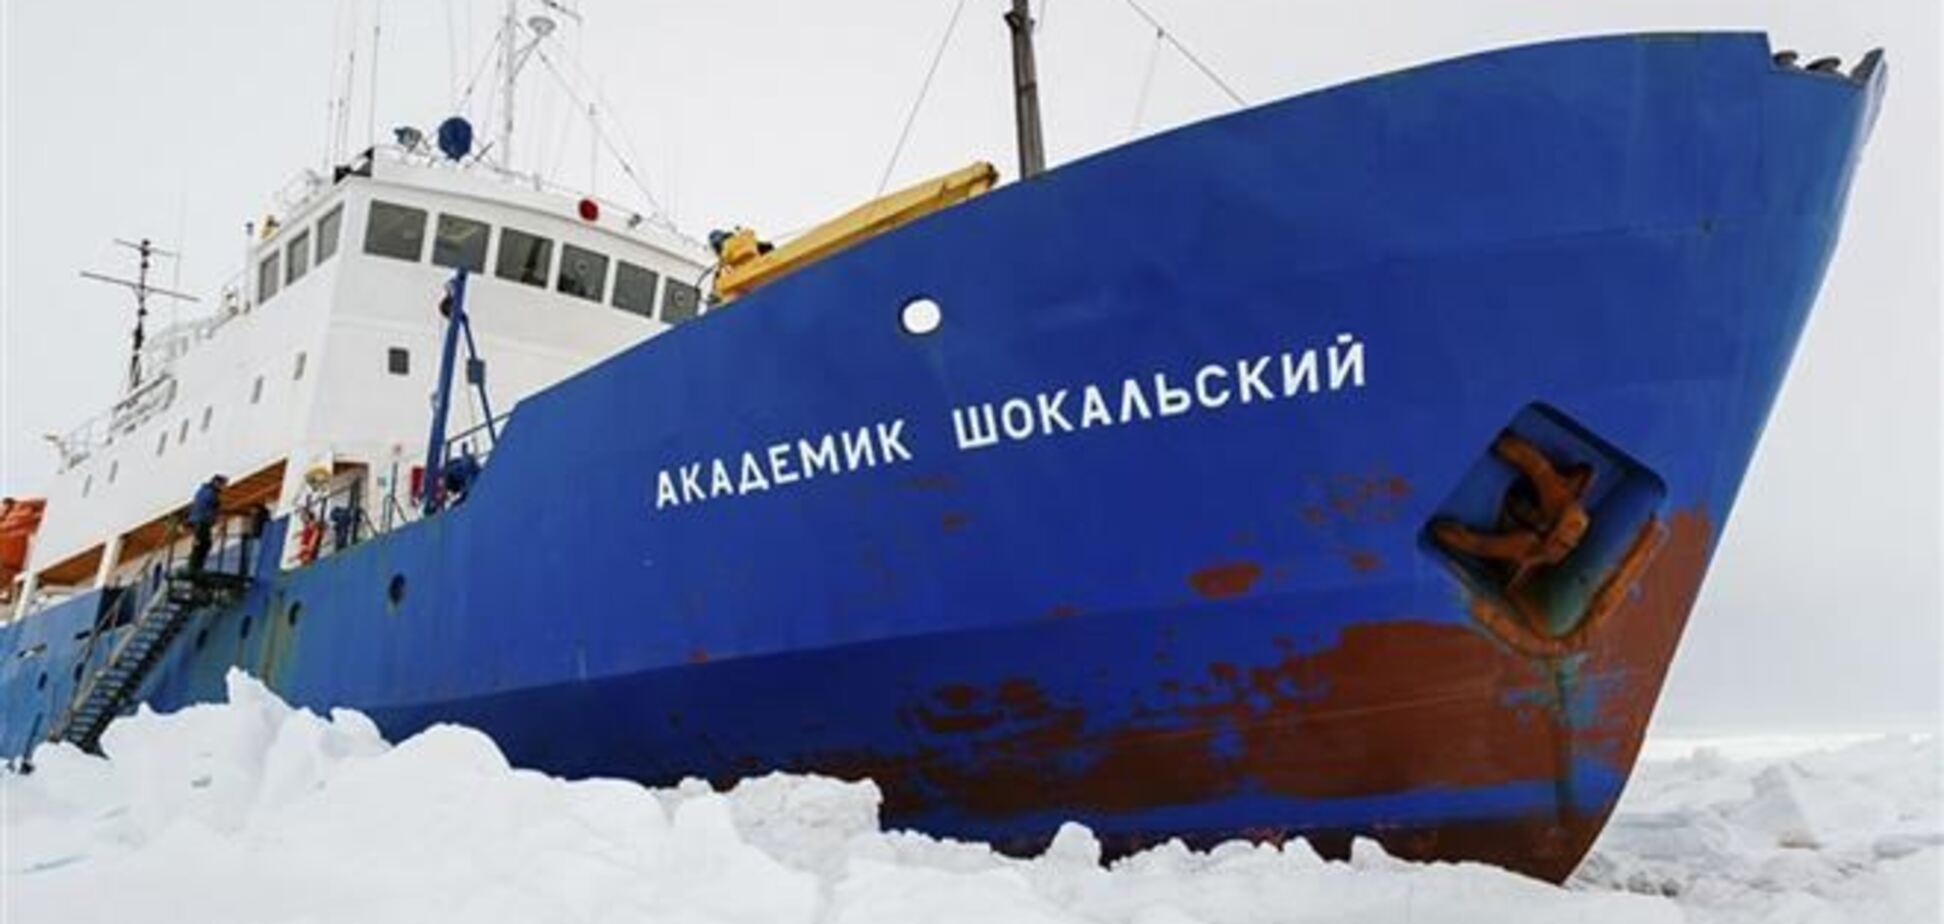 Російське судно 'Академік Шокальский' само звільнилося з льодового полону